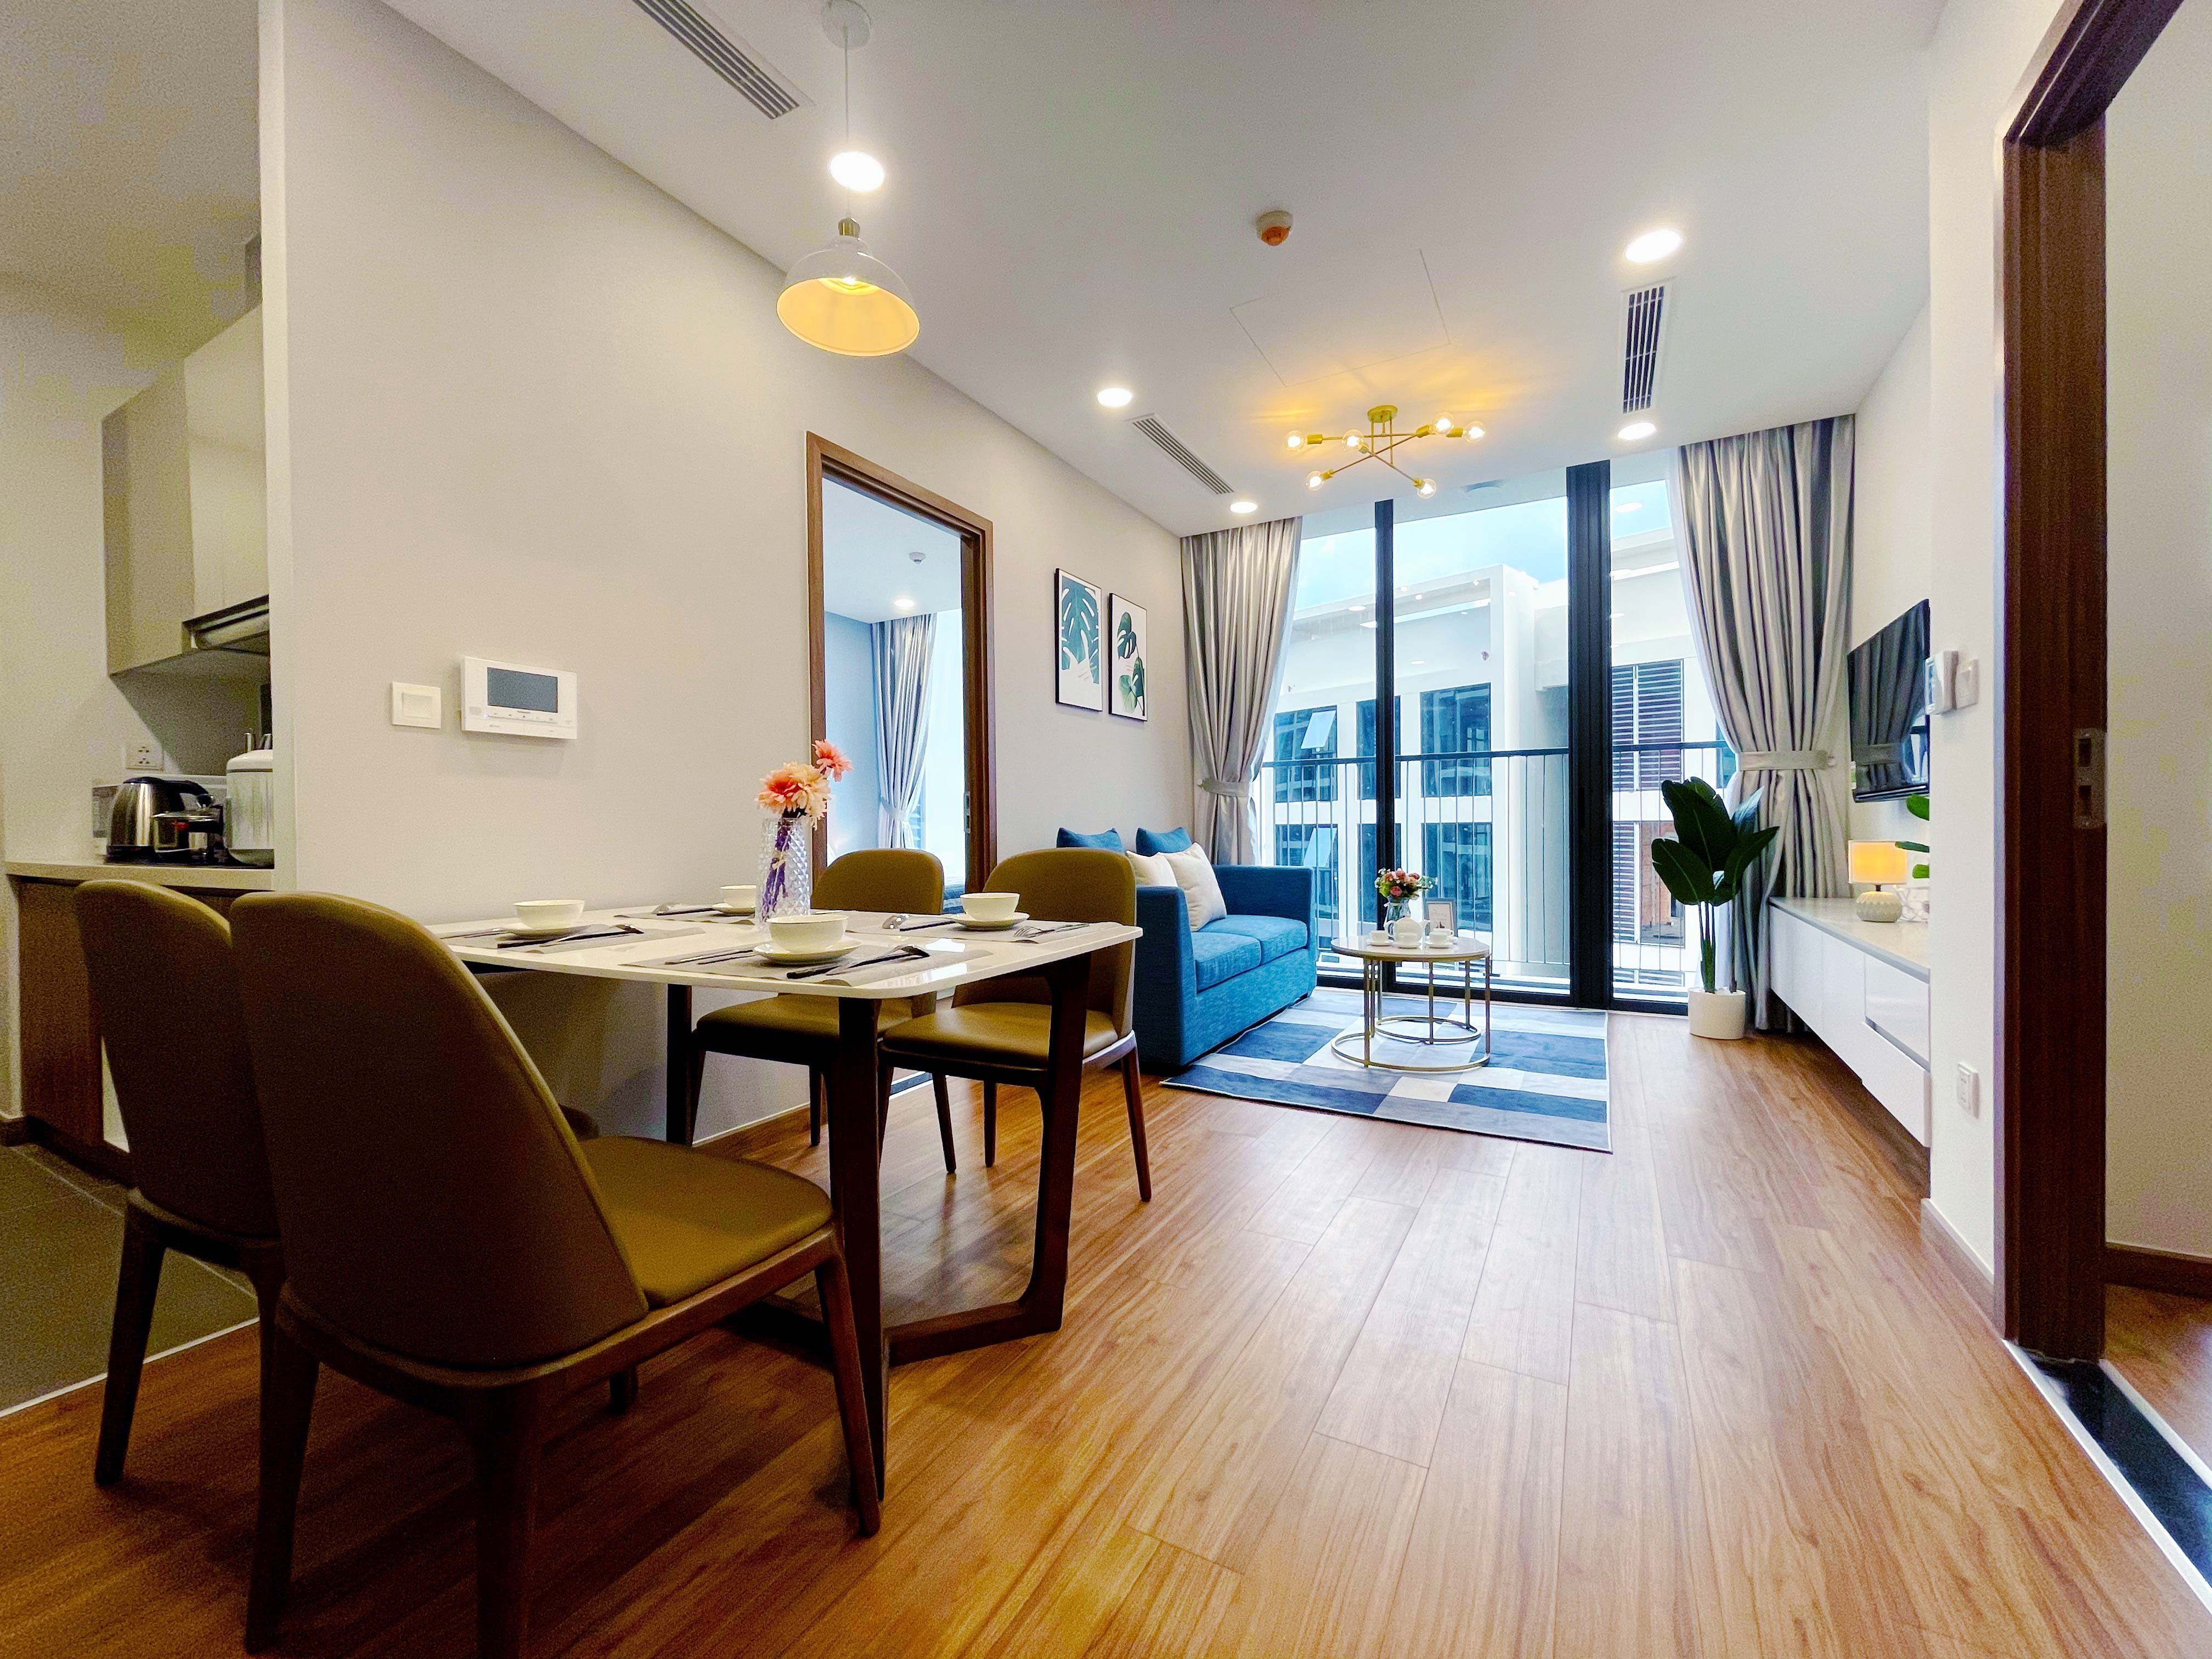 新房|646套杭州全市新房共签约366套，被称合理水平